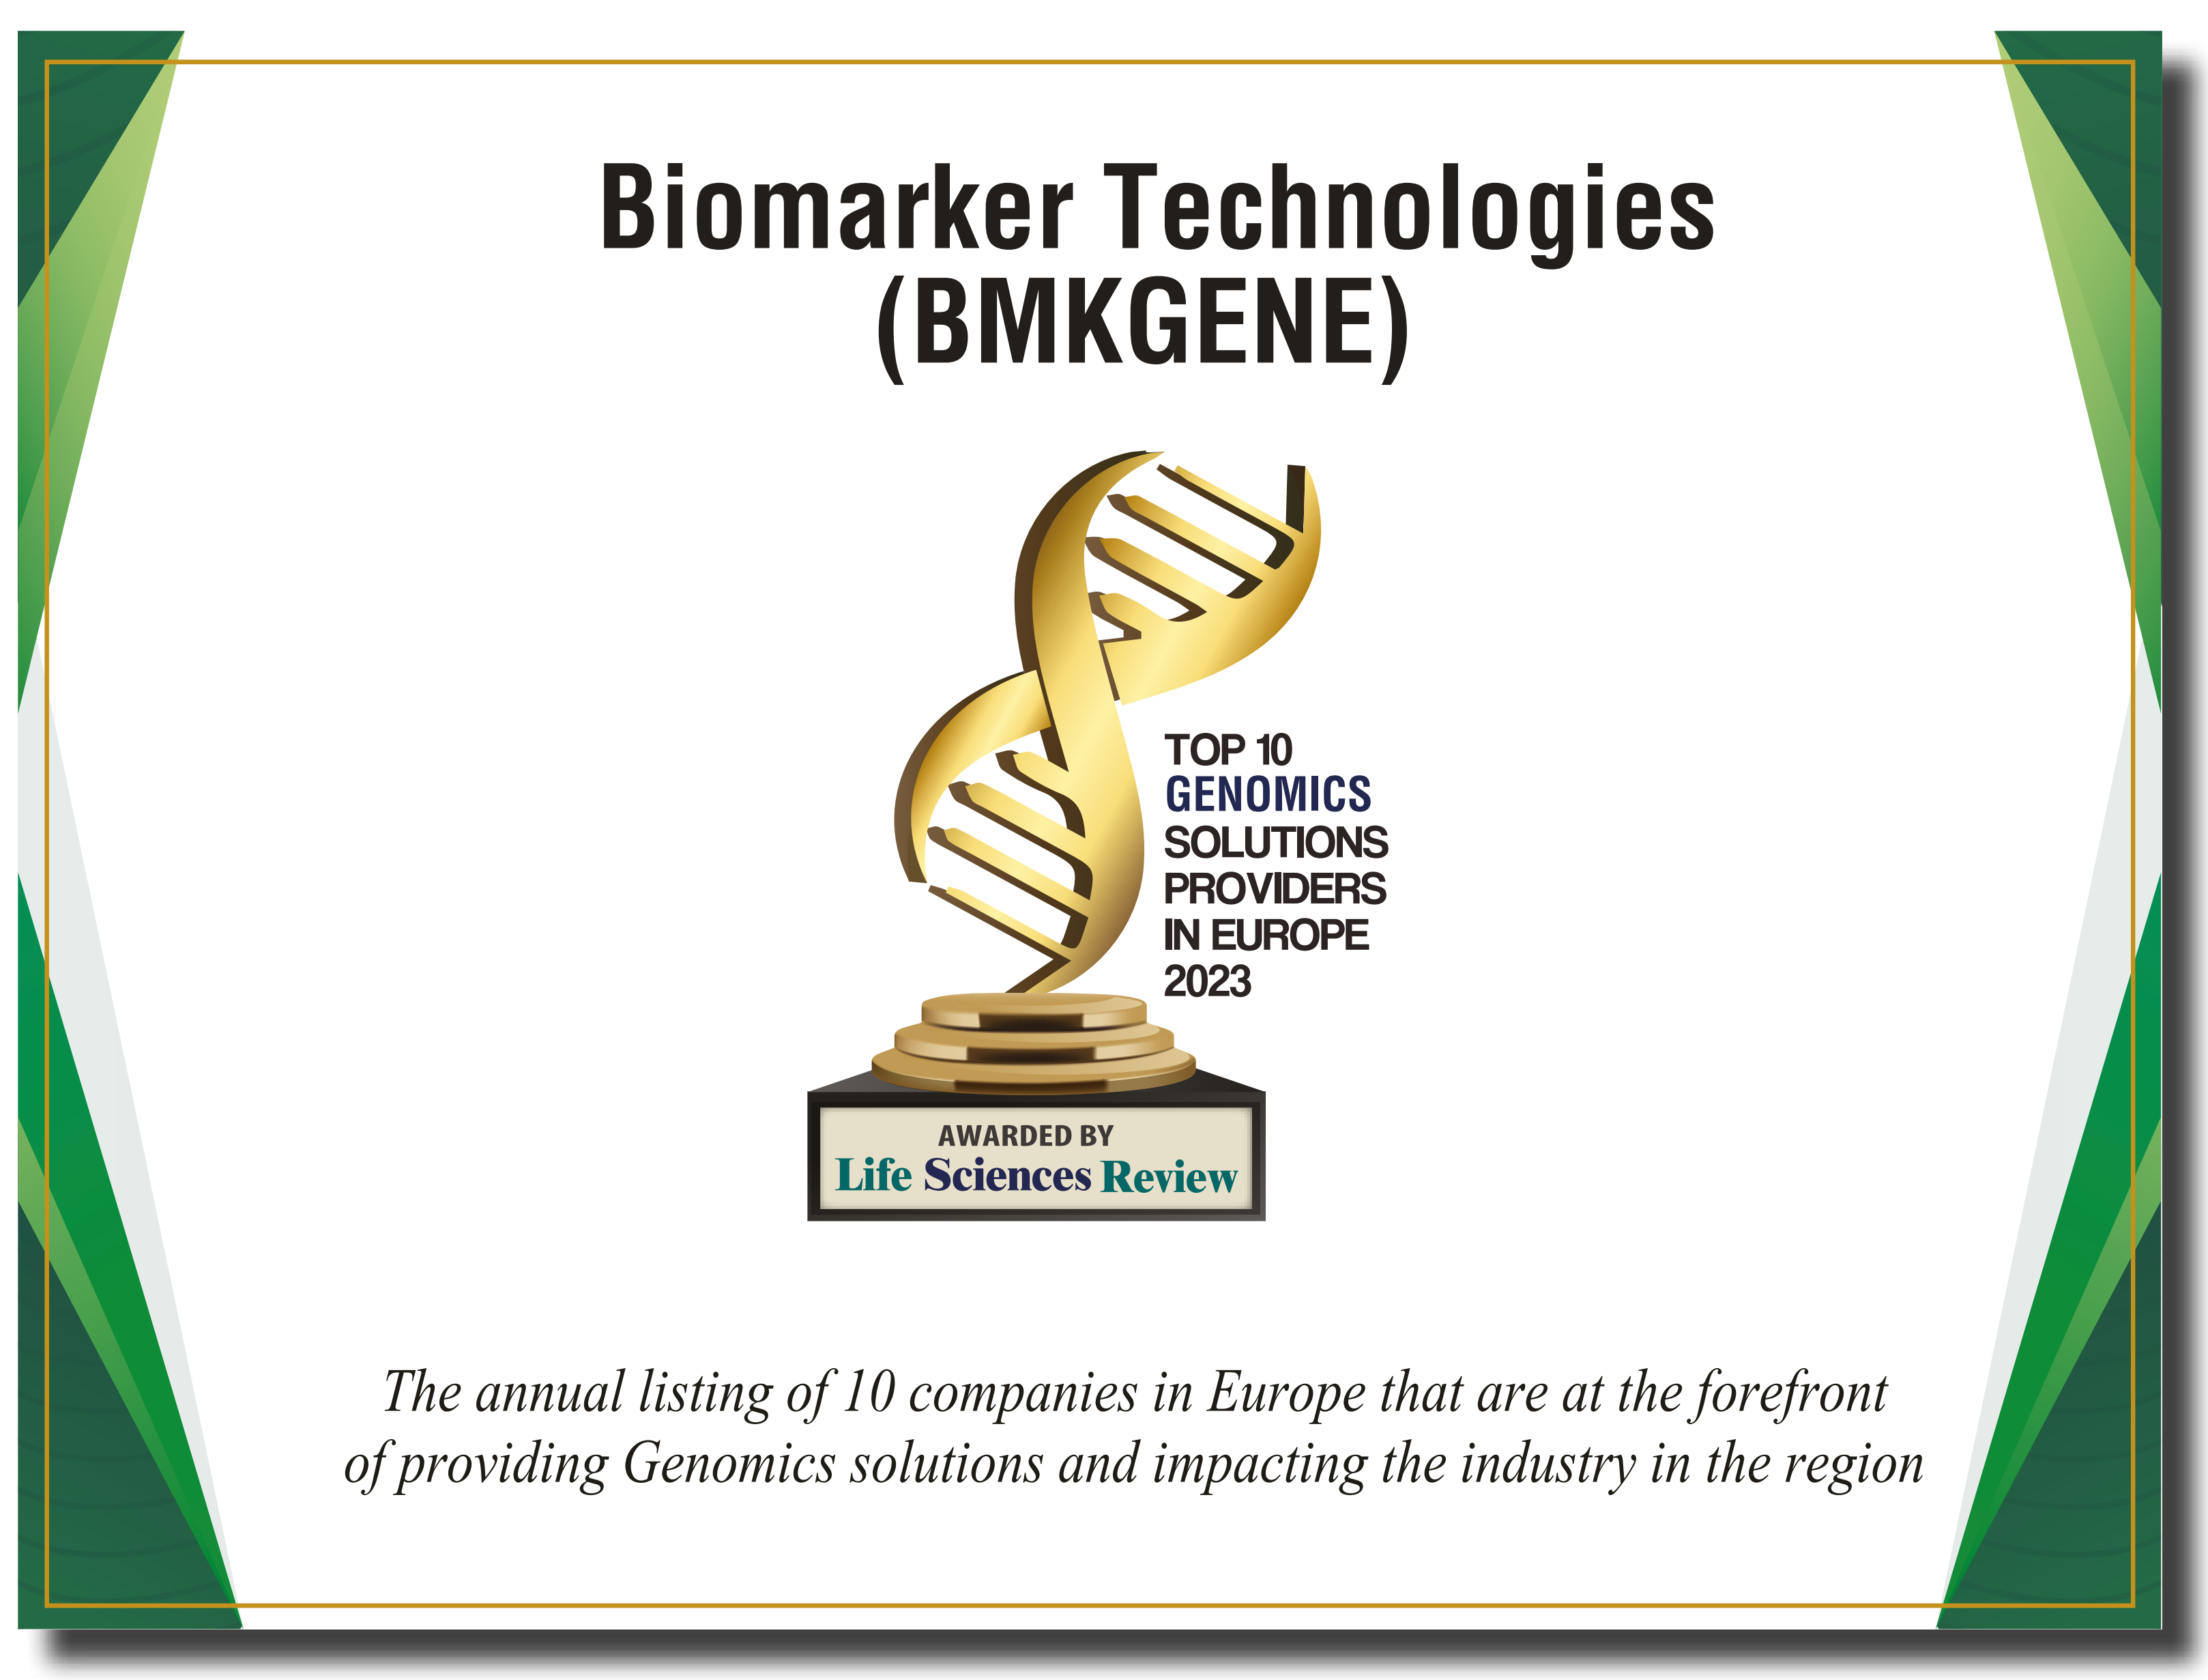 Jesteśmy dumni, że zostaliśmy wybrani do grona 10 najlepszych firm zajmujących się rozwiązaniami genomicznymi w Europie w roku 2023!